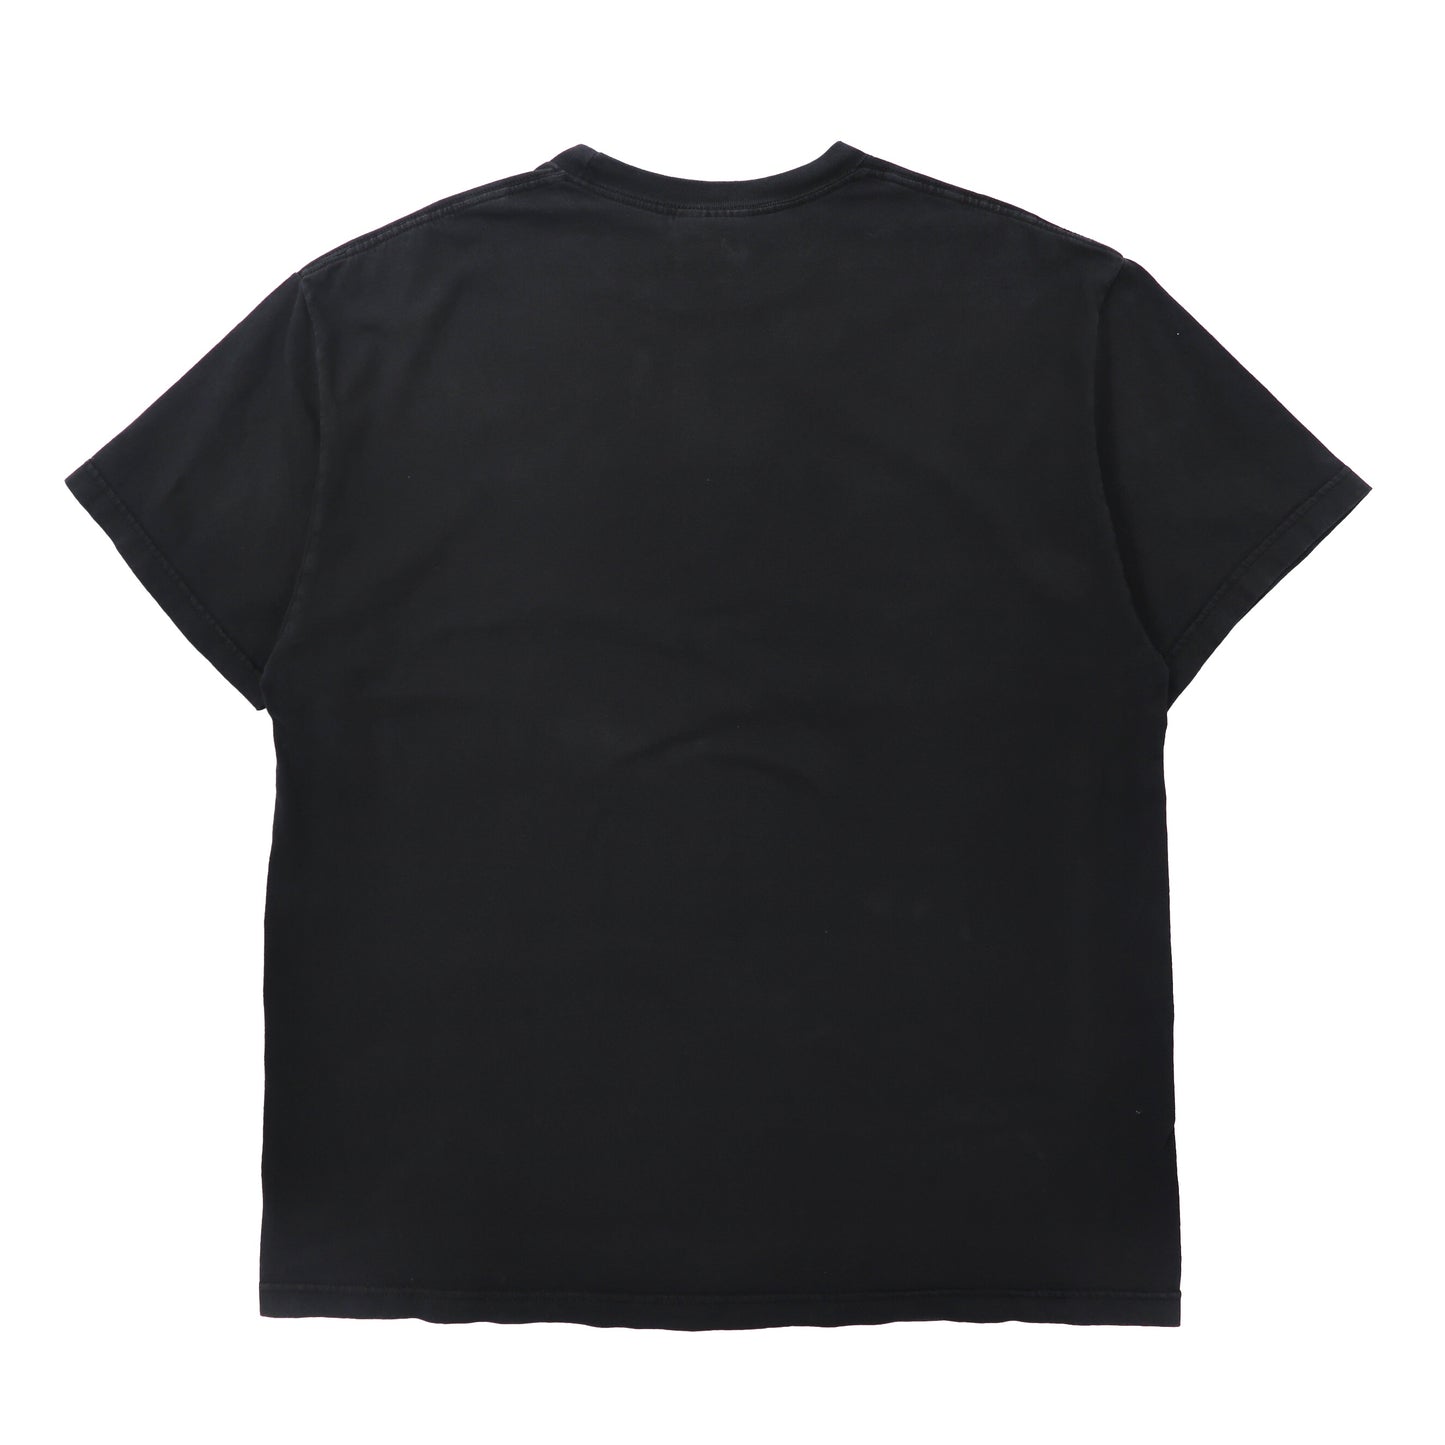 FAMOUS STARS AND STRAPS ビッグサイズTシャツ XL ブラック ロゴプリント メキシコ製